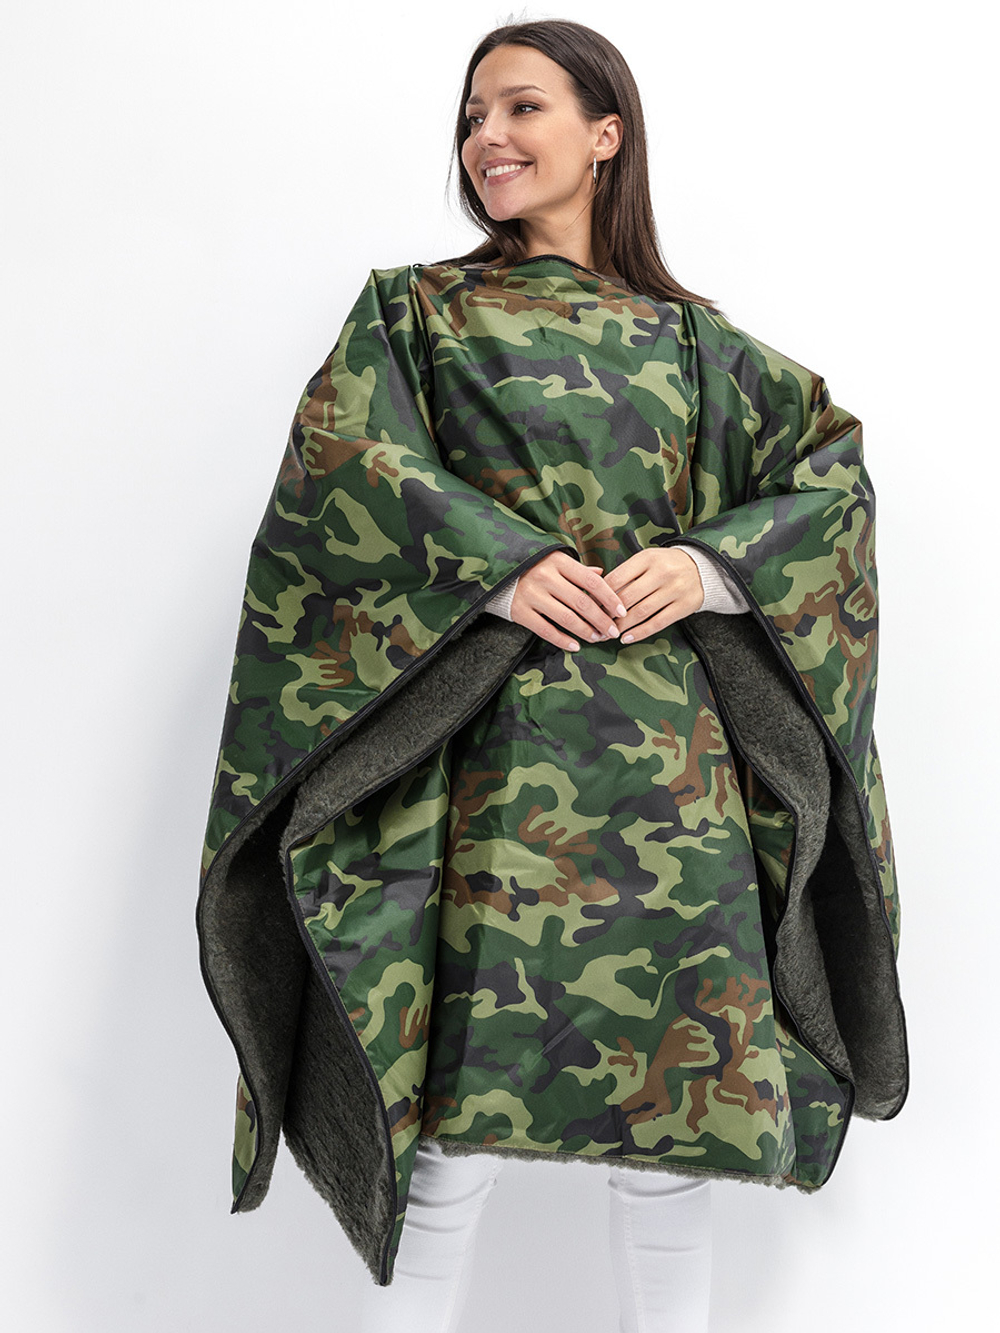 Многофункциональное одеяло-пончо-спальный мешок с непромокаемым верхом в чехле малое